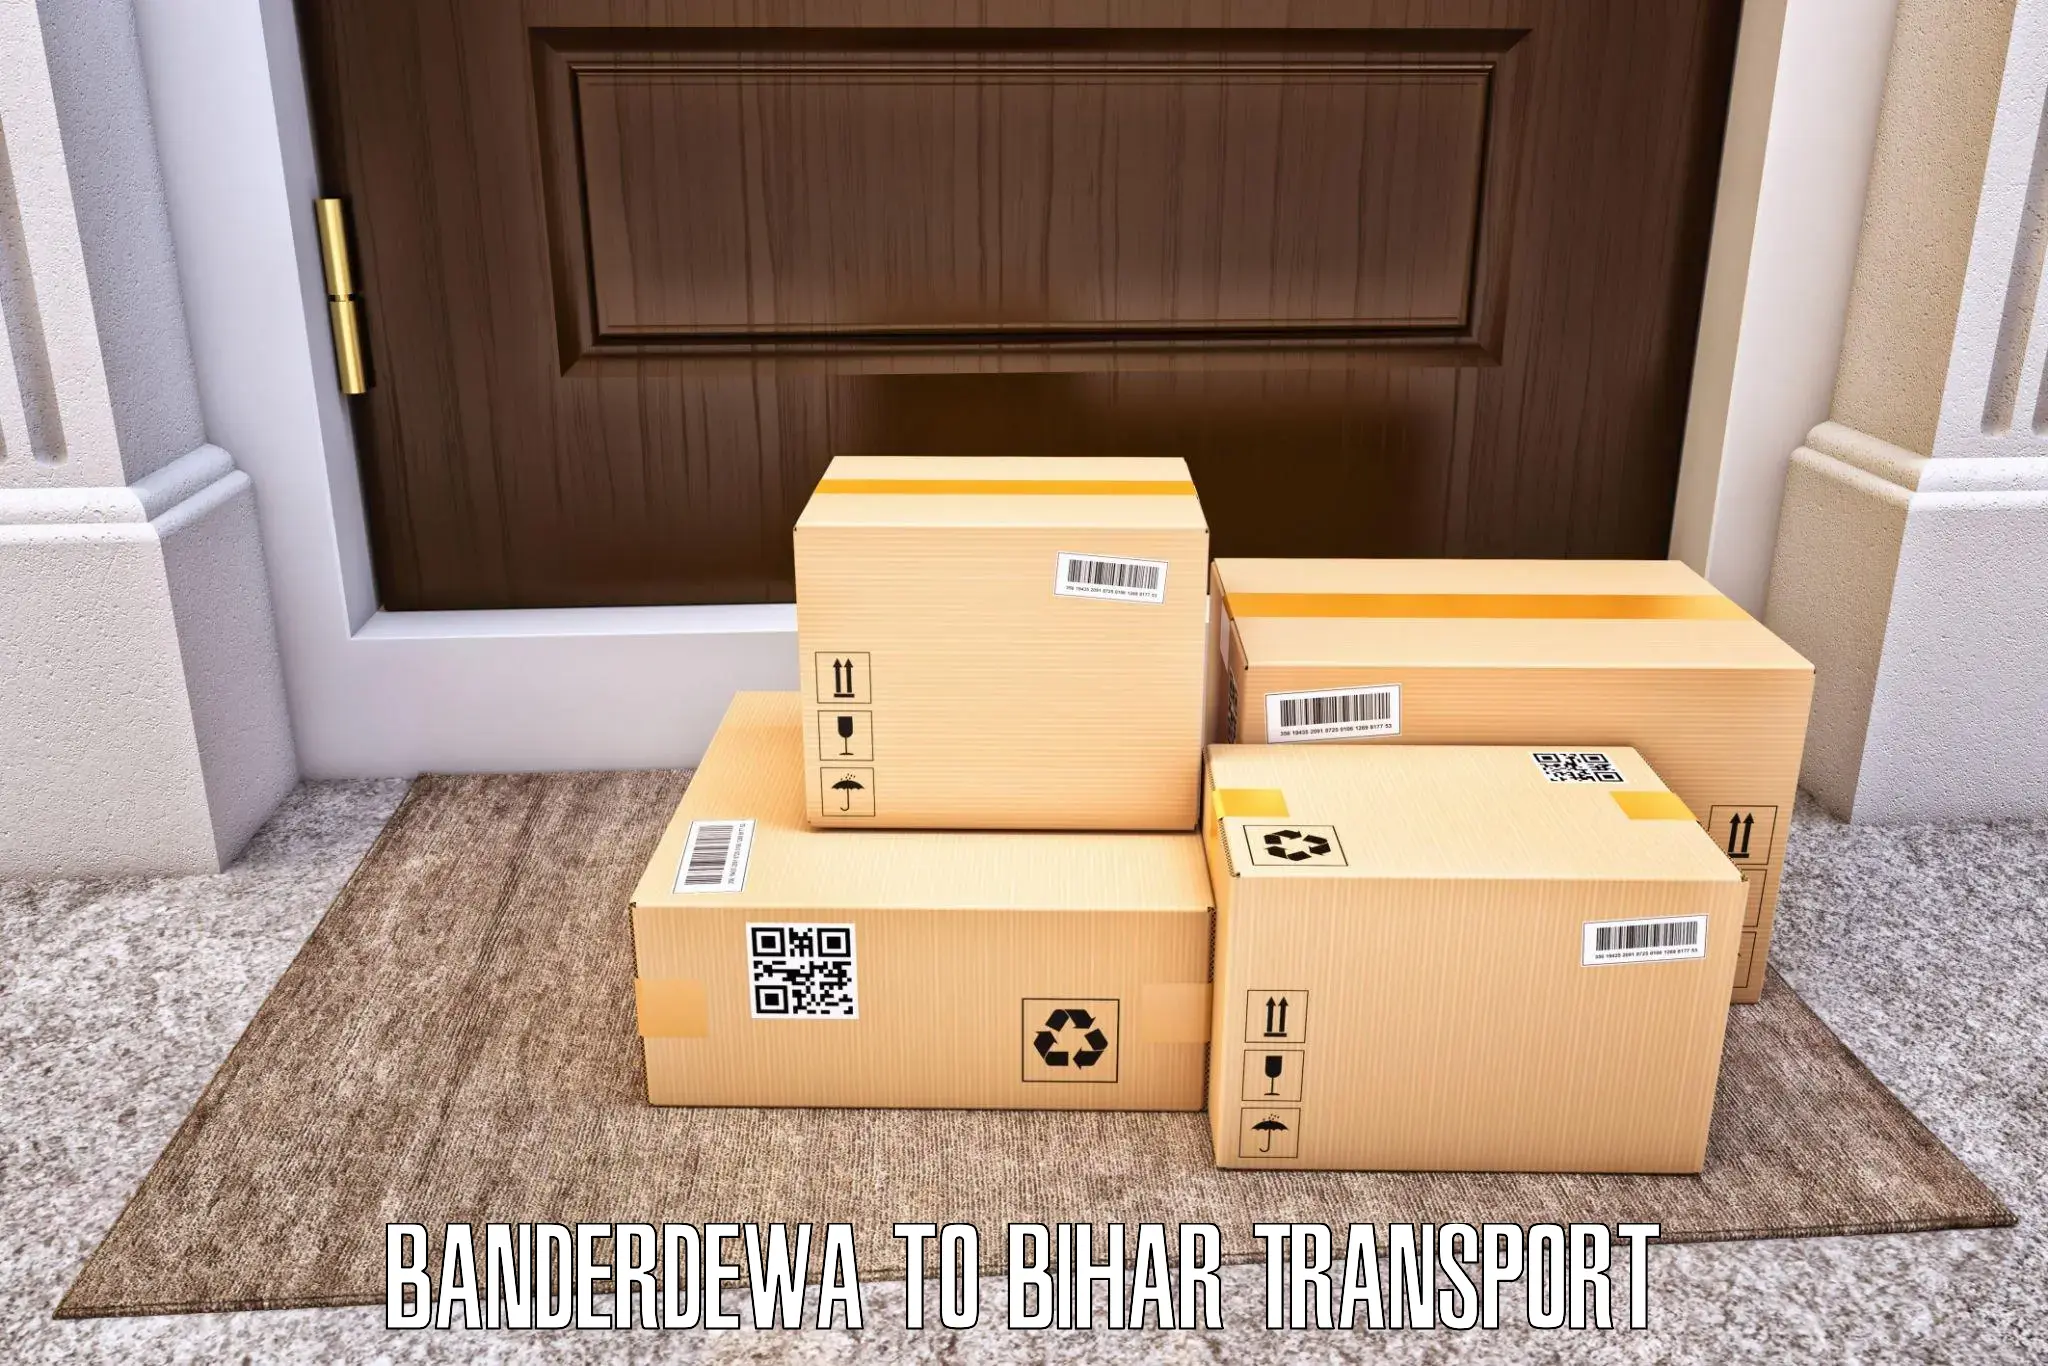 Furniture transport service Banderdewa to IIIT Bhagalpur